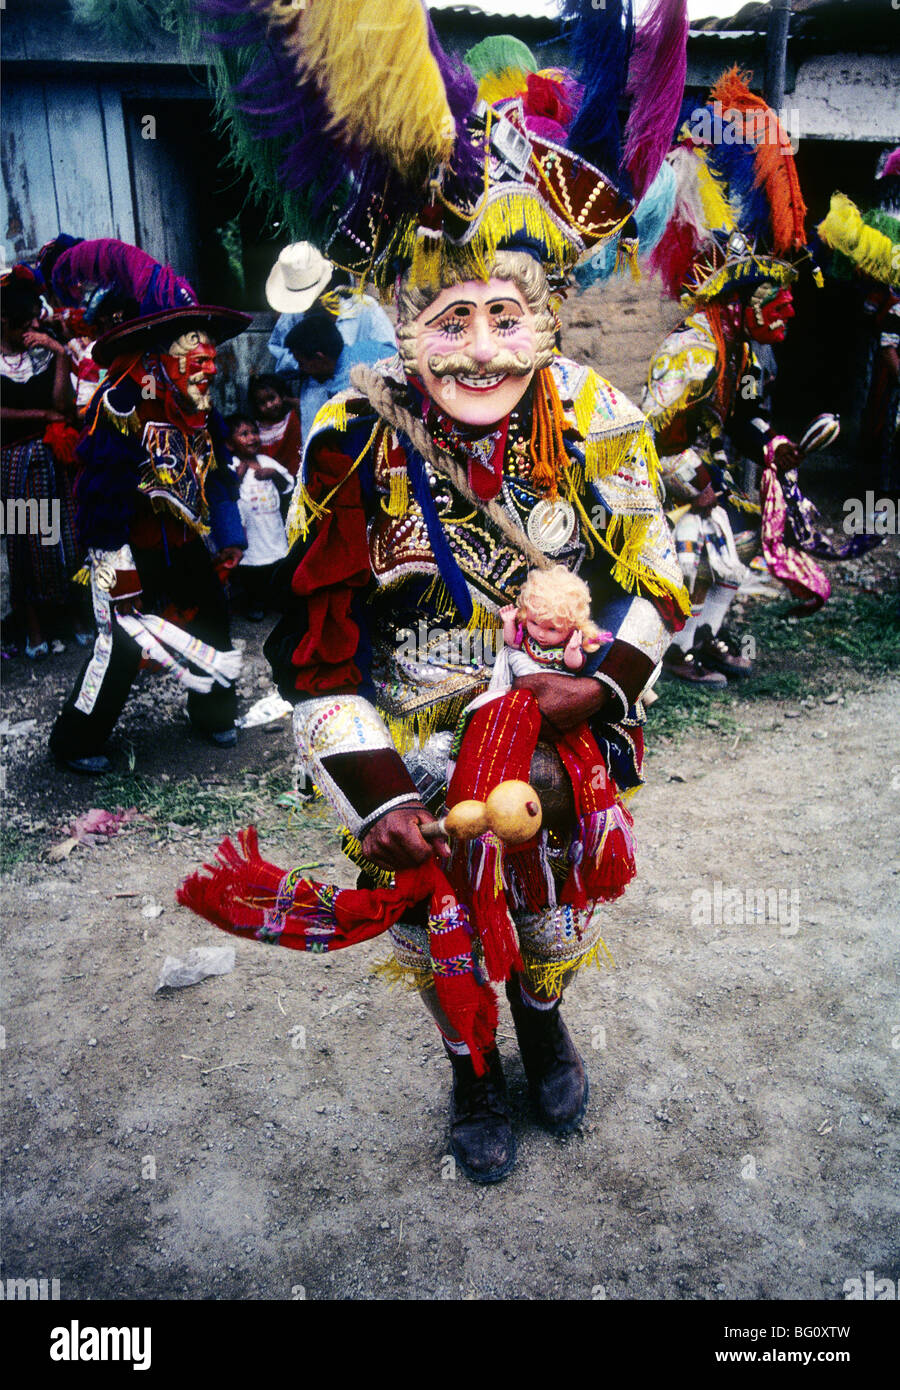 Un hombre vestido con el traje y con la máscara de un conquistador español  y la celebración de un baby doll blanco indicando que ha sido victorioso  sobre los mayas en ambas